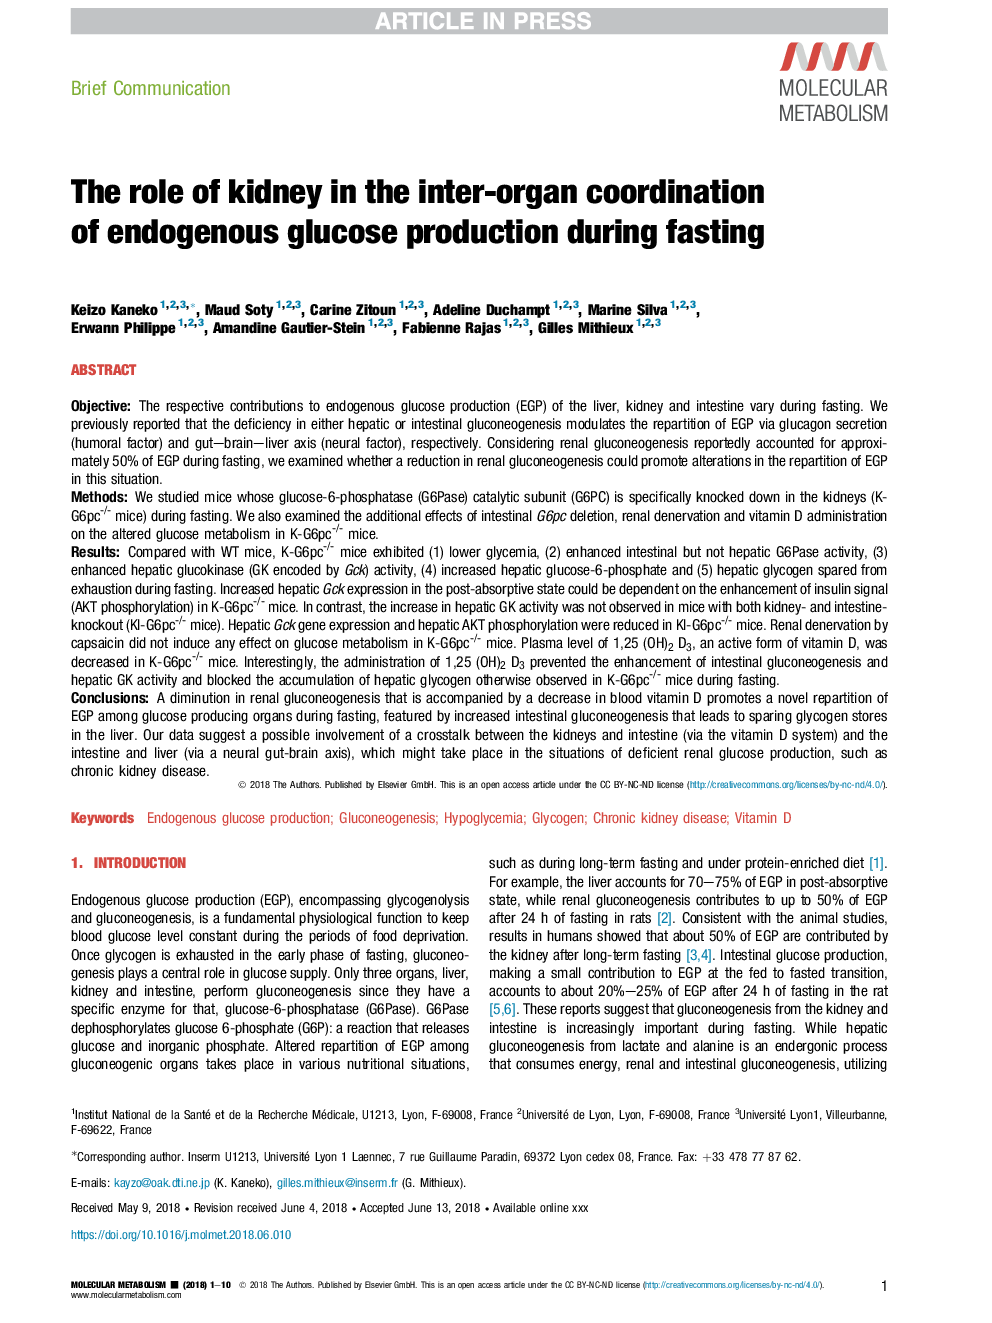 نقش کلیه در هماهنگی بین درونگروه تولید گلوکز در طی روزهداری